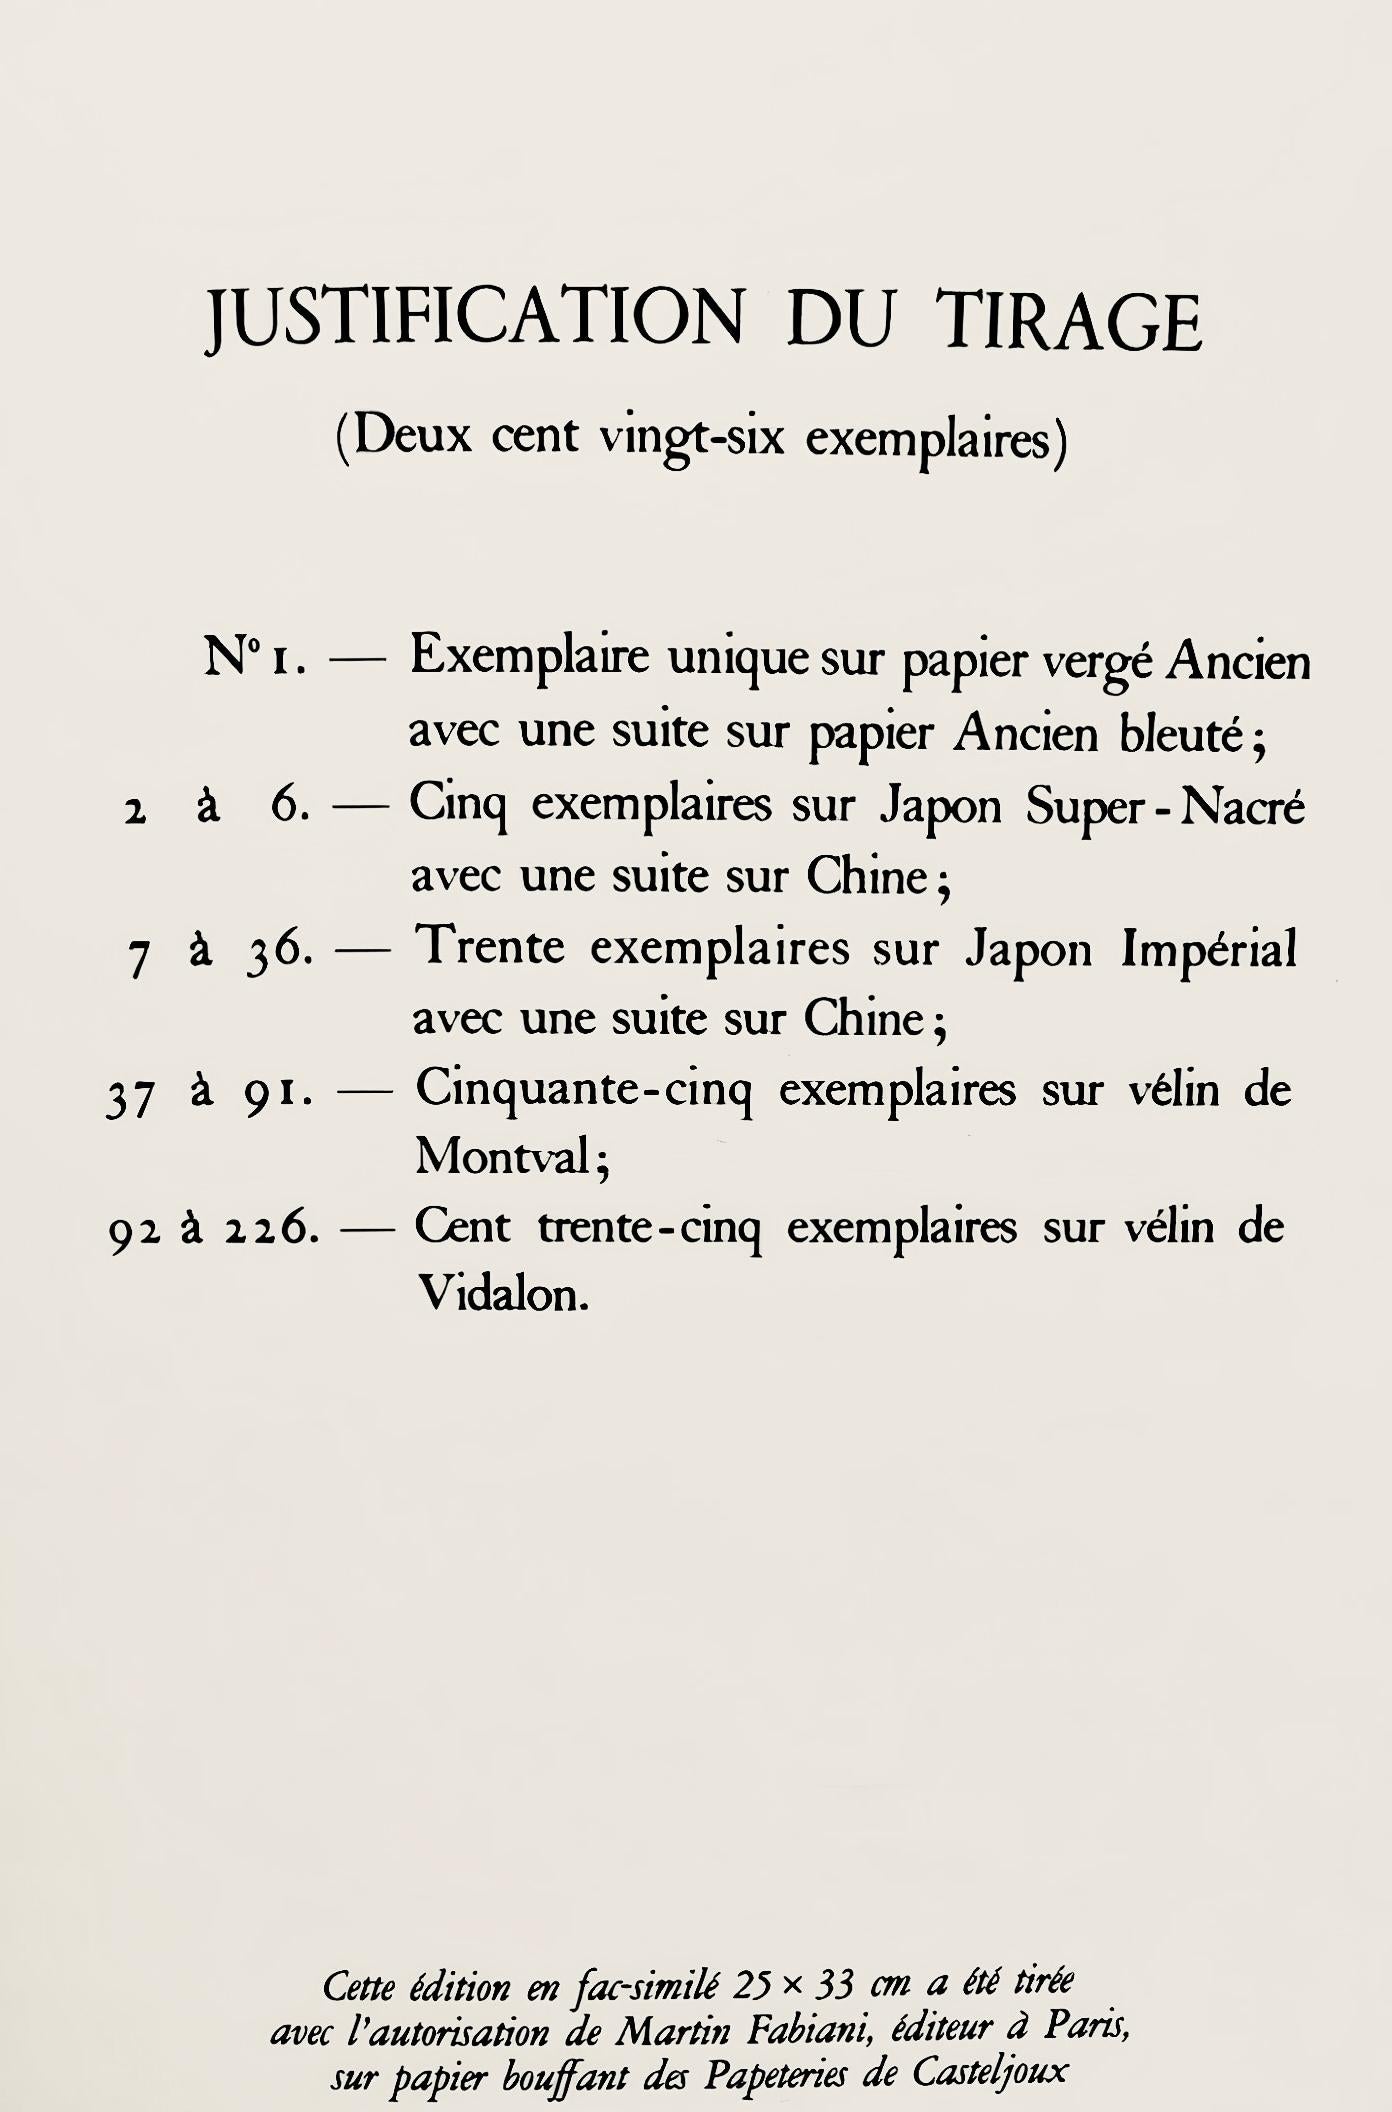 Picasso, Le Vautour, Histoire naturelle (after) 5